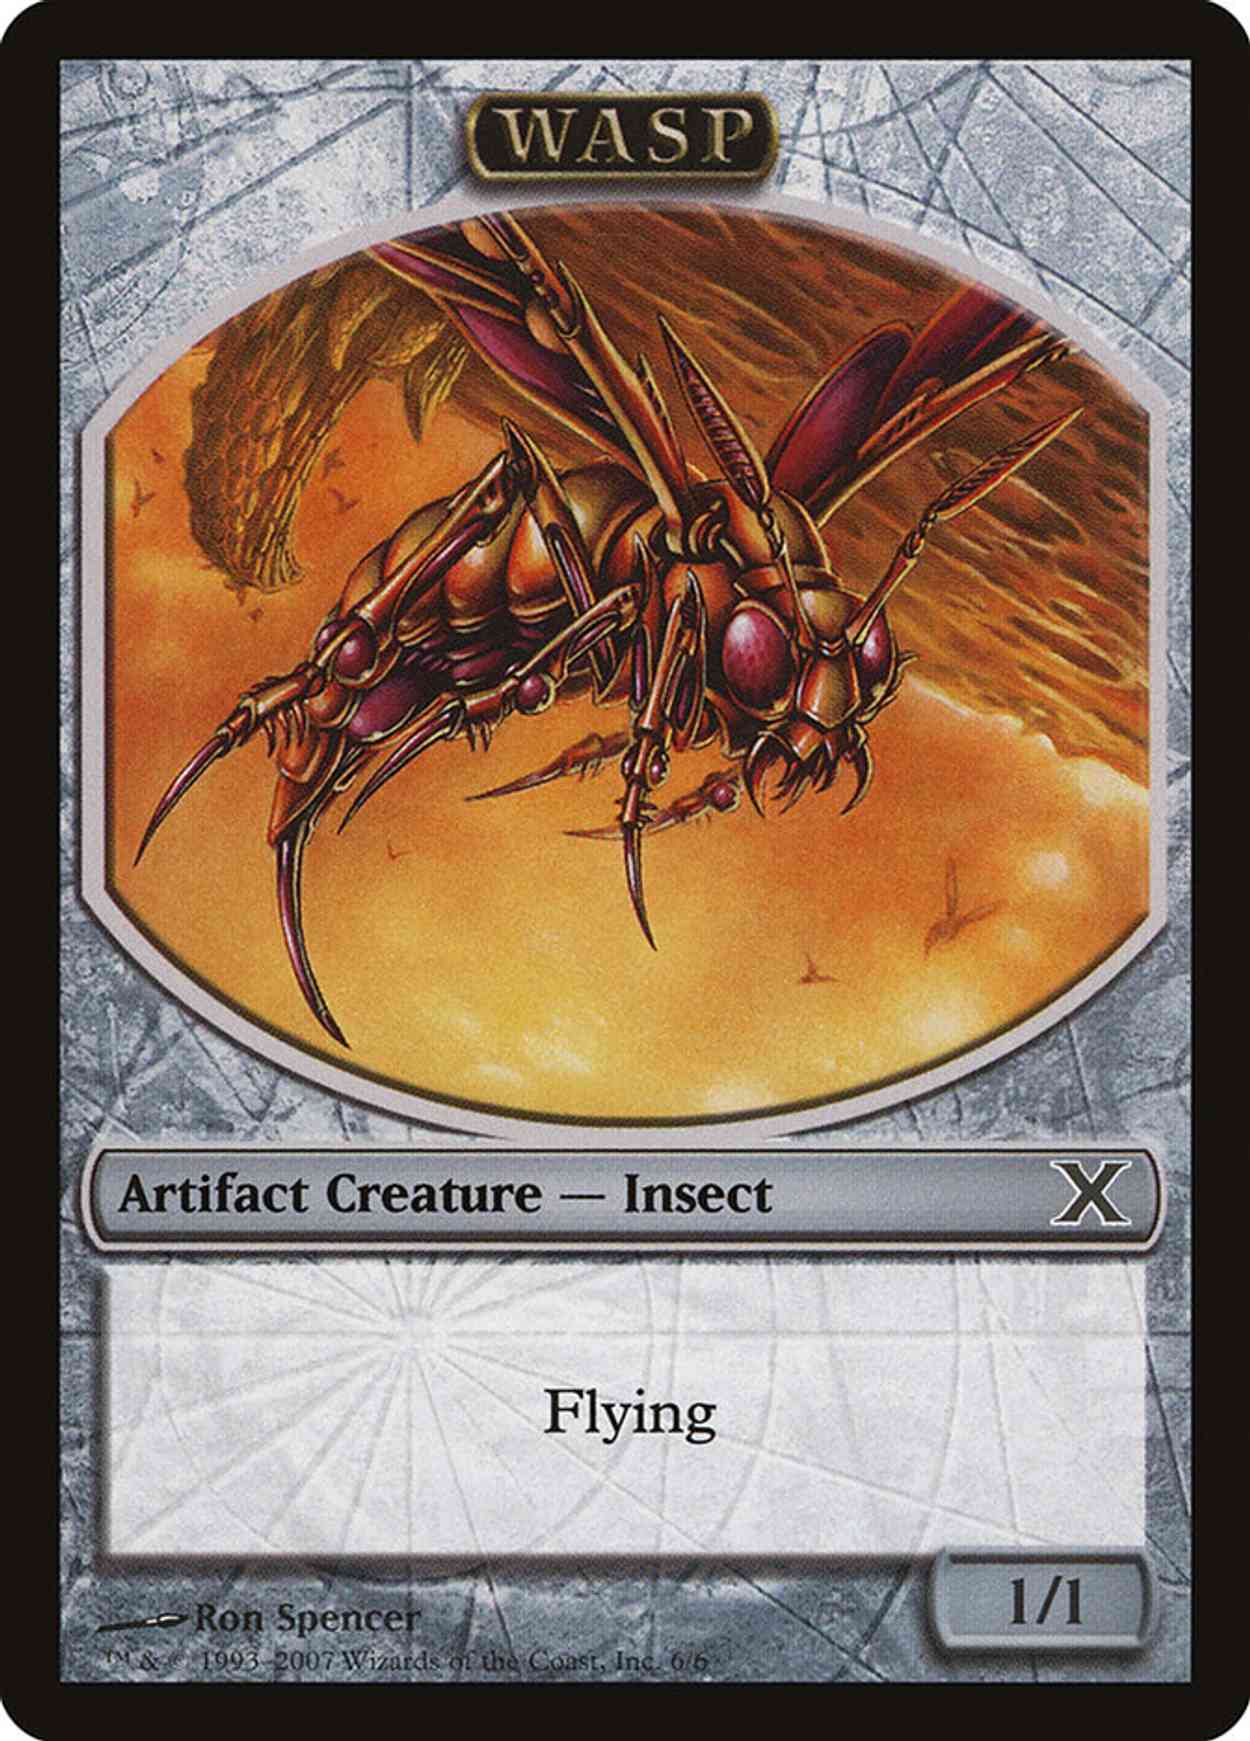 Wasp Token magic card front